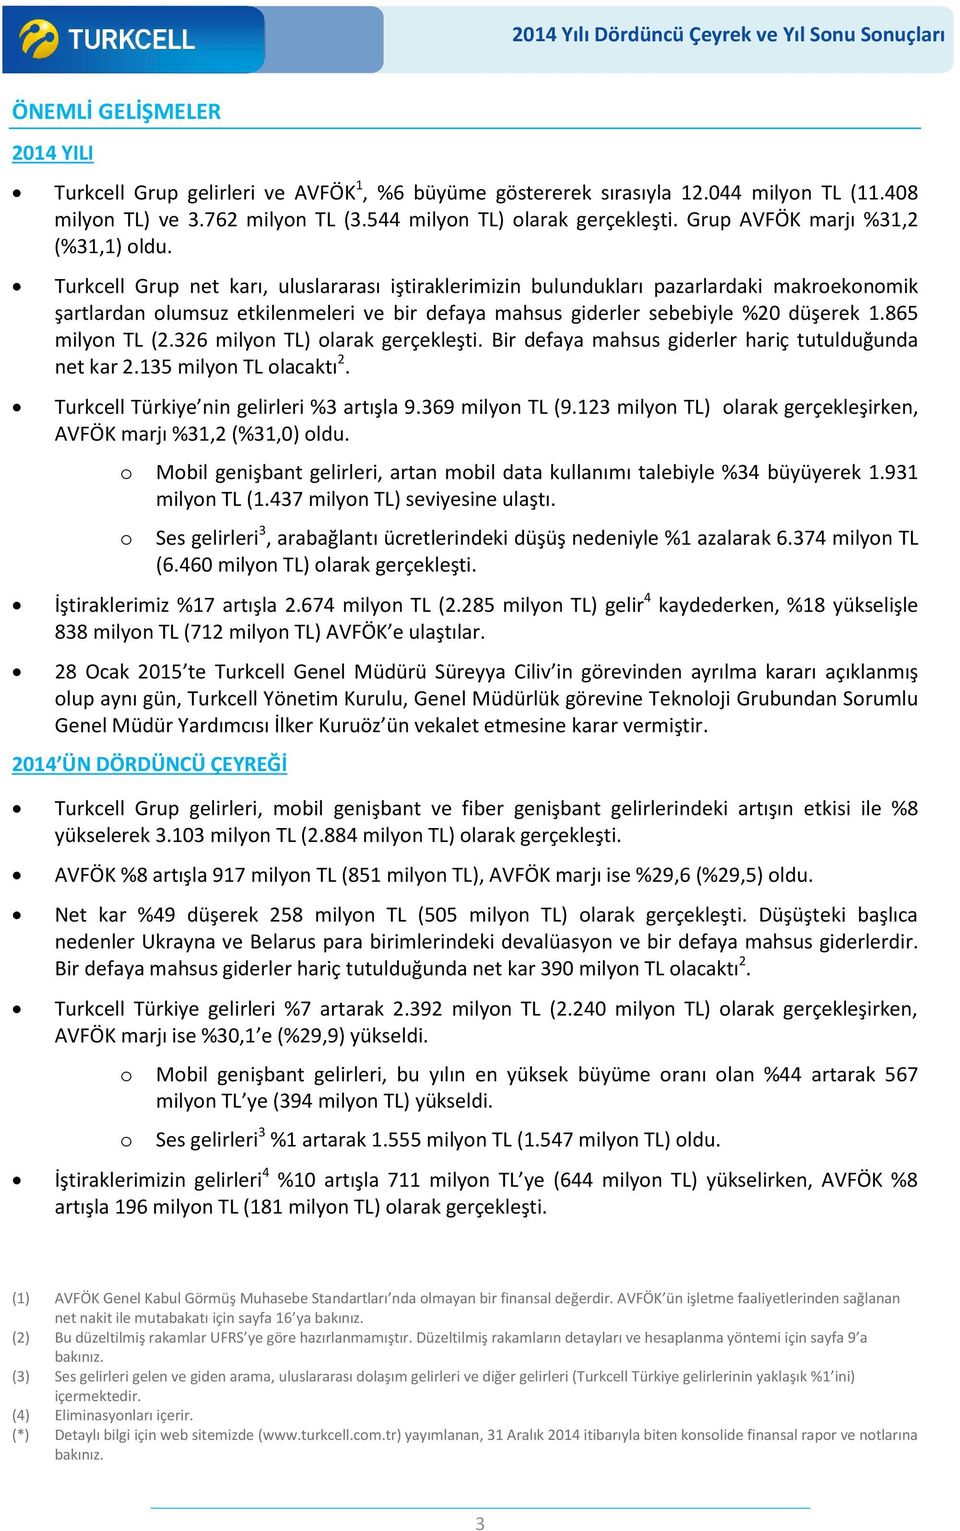 Turkcell Grup net karı, uluslararası iştiraklerimizin bulundukları pazarlardaki makroekonomik şartlardan olumsuz etkilenmeleri ve bir defaya mahsus giderler sebebiyle %20 düşerek 1.865 milyon TL (2.